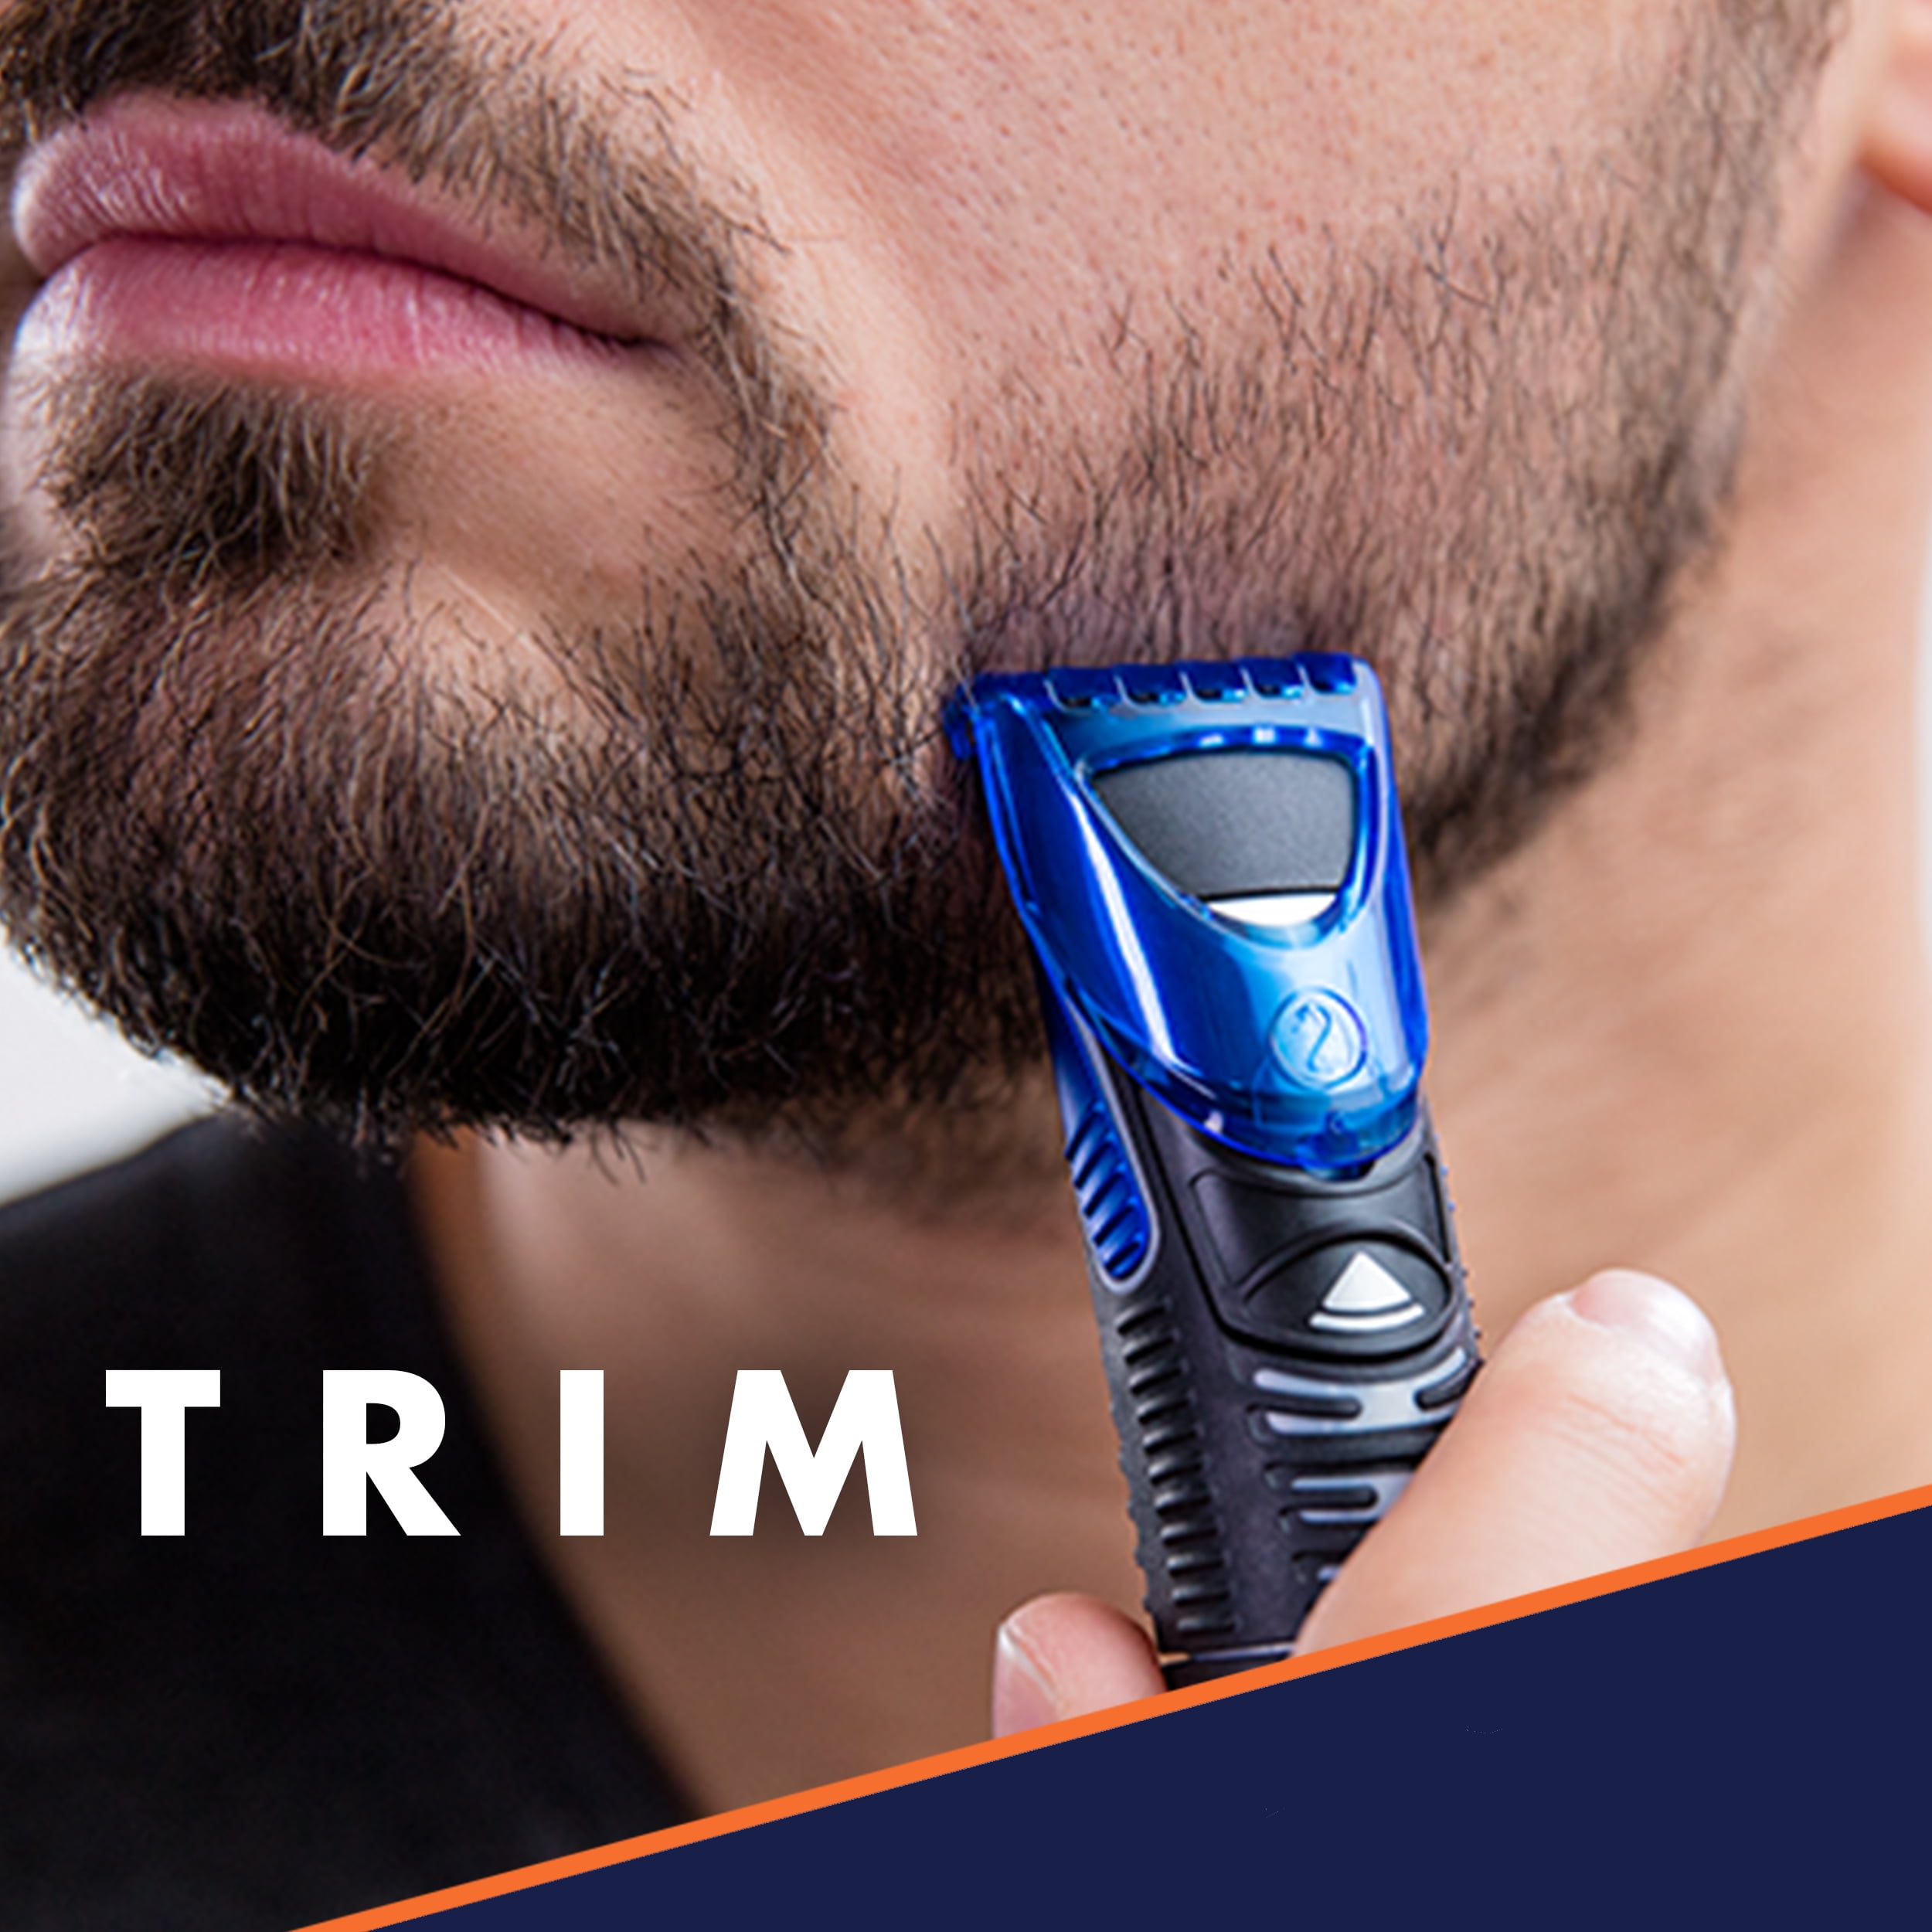 gillette men's trimmer